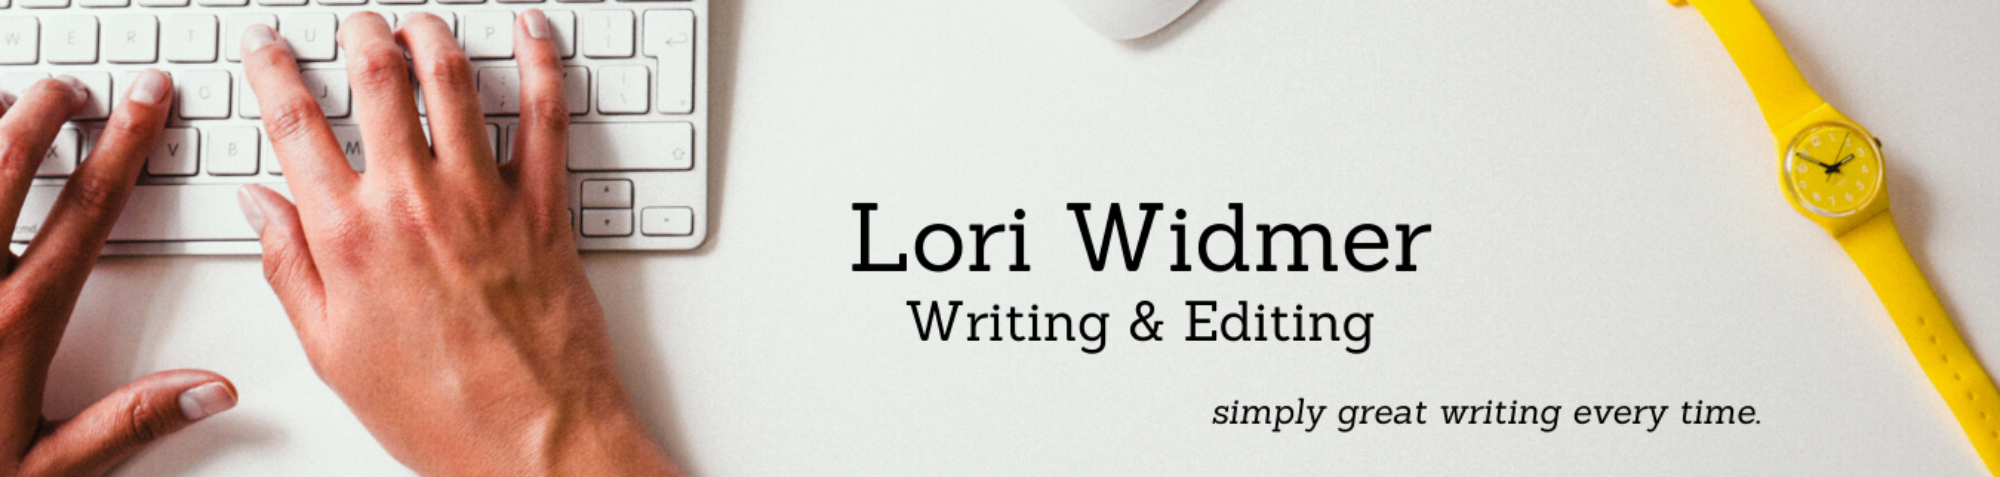 Lori Widmer Writing & Editing